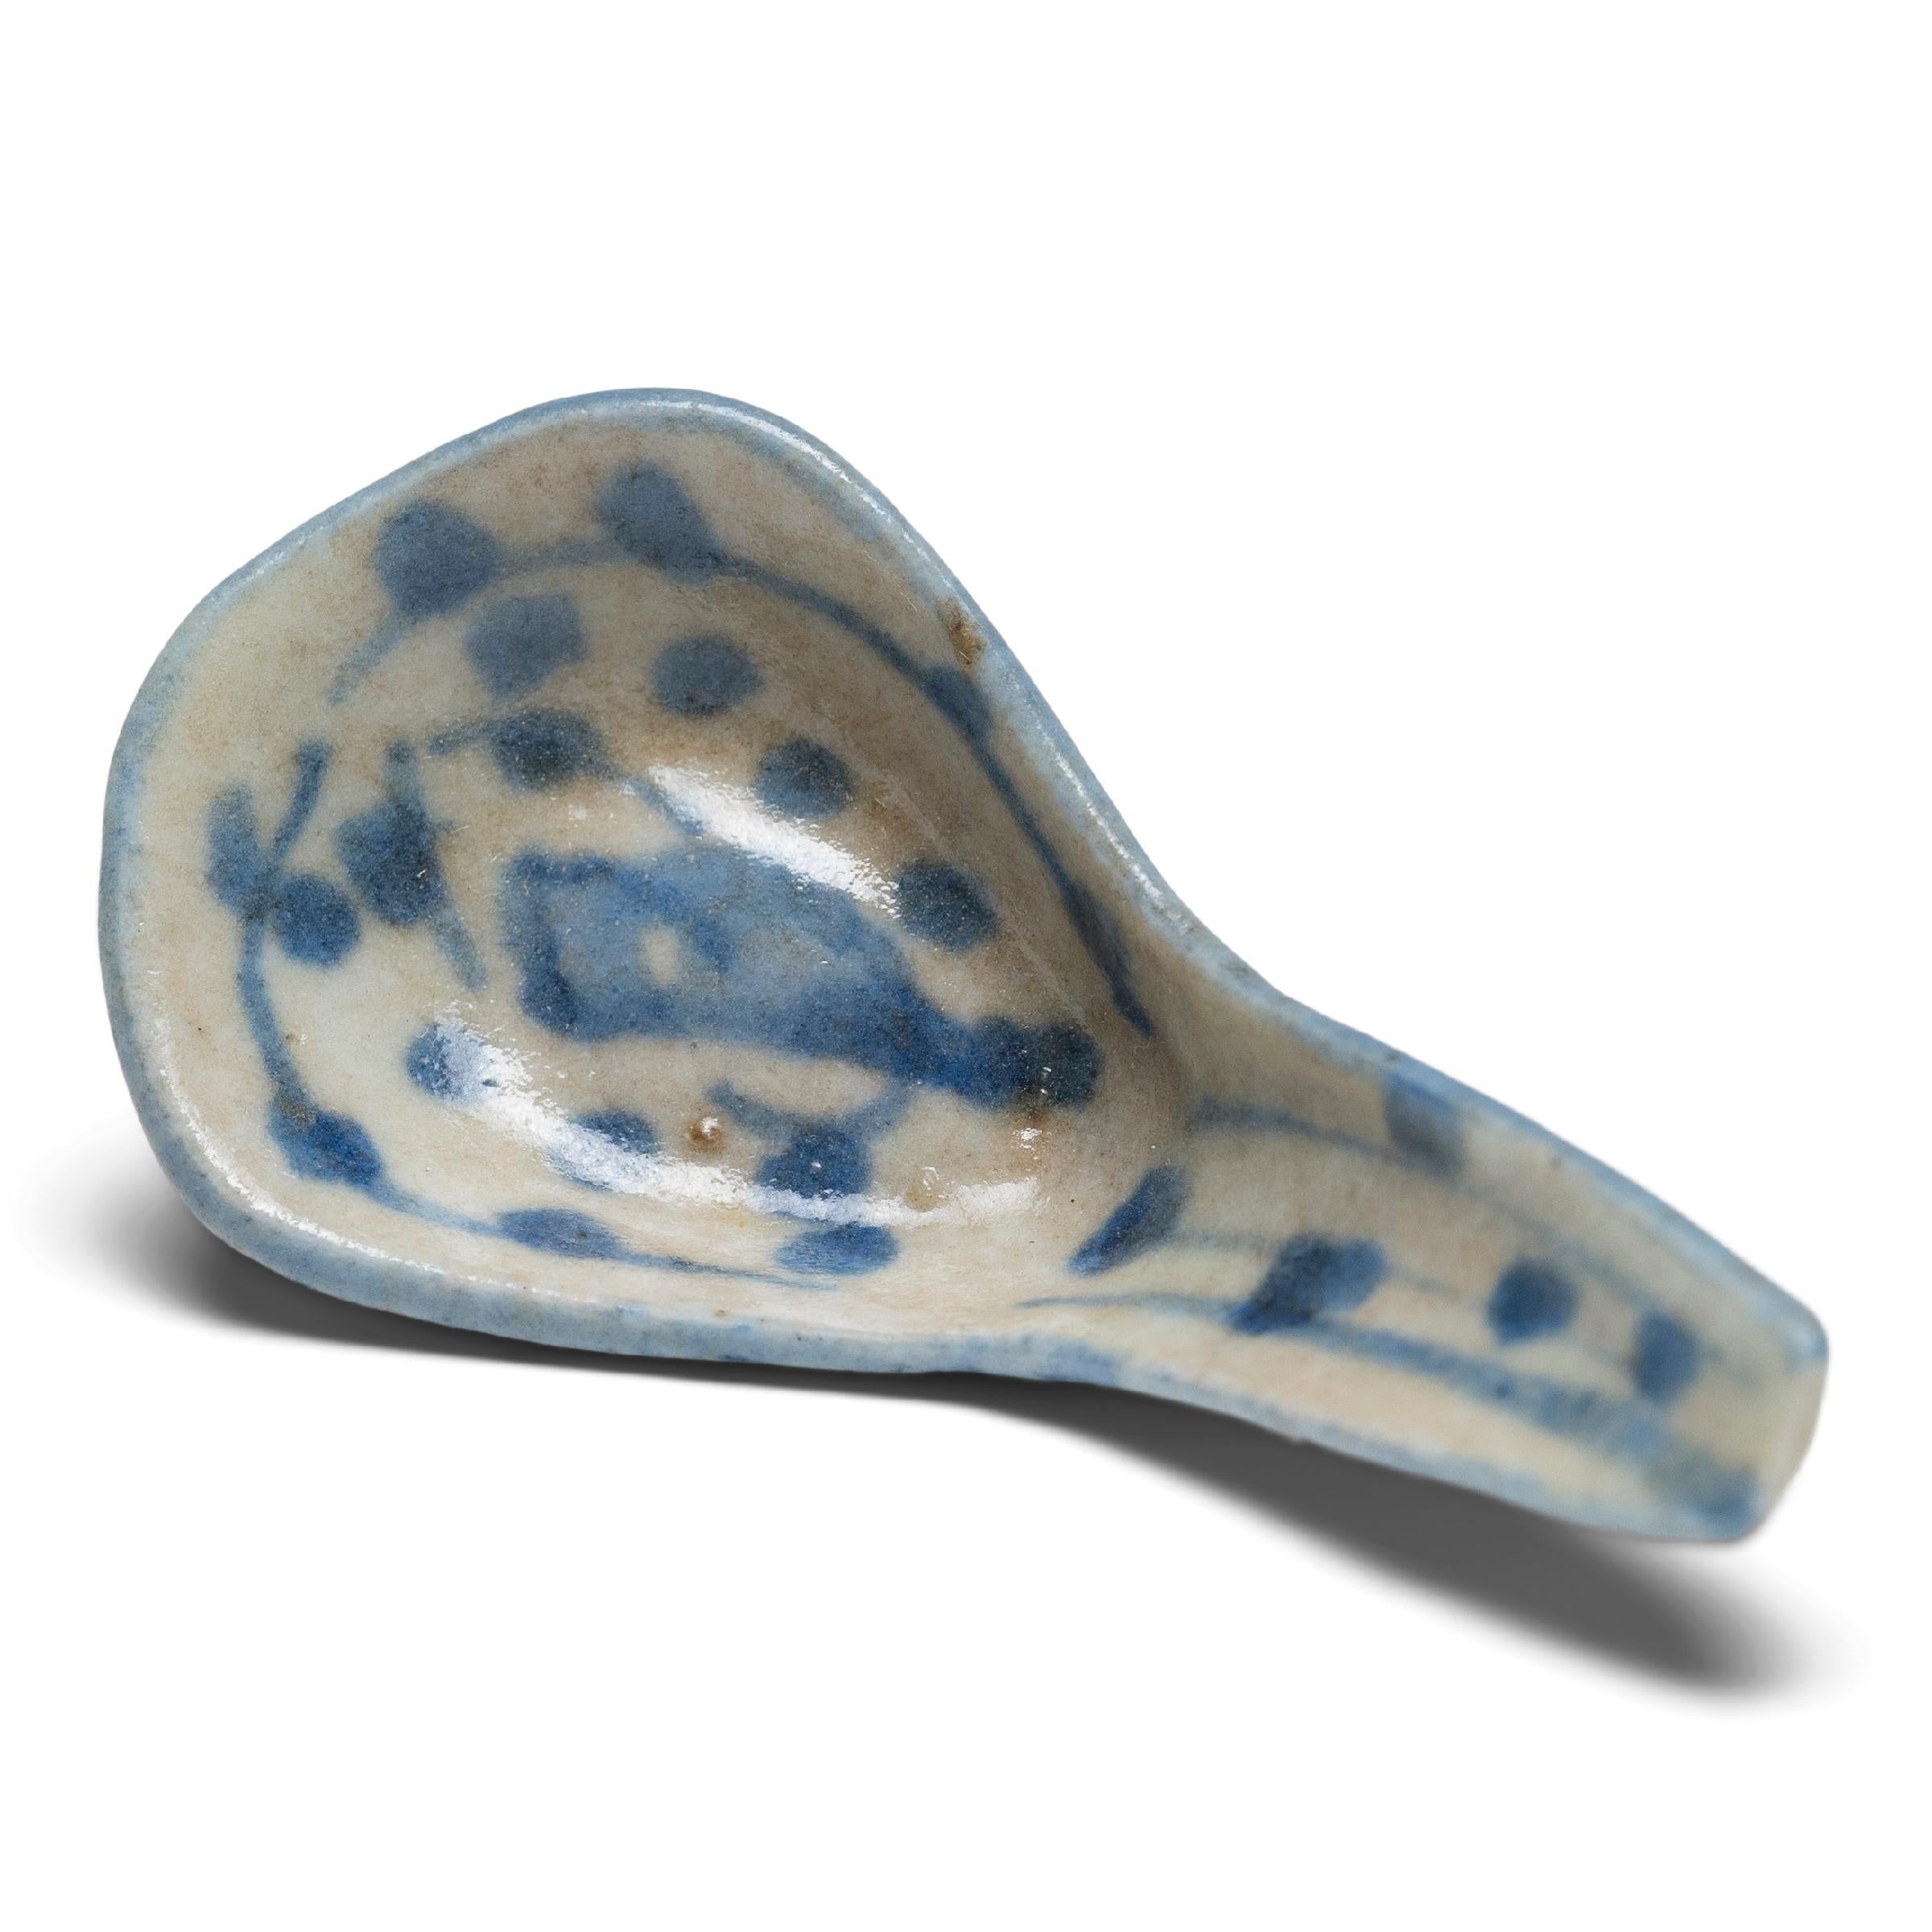 Exemple délicat de la pratique ancestrale de la céramique bleu et blanc, cette cuillère à soupe en porcelaine du XIXe siècle était probablement utilisée comme ustensile de table quotidien. Utilisées en Chine dès la dynastie Shang (1600 - 1046